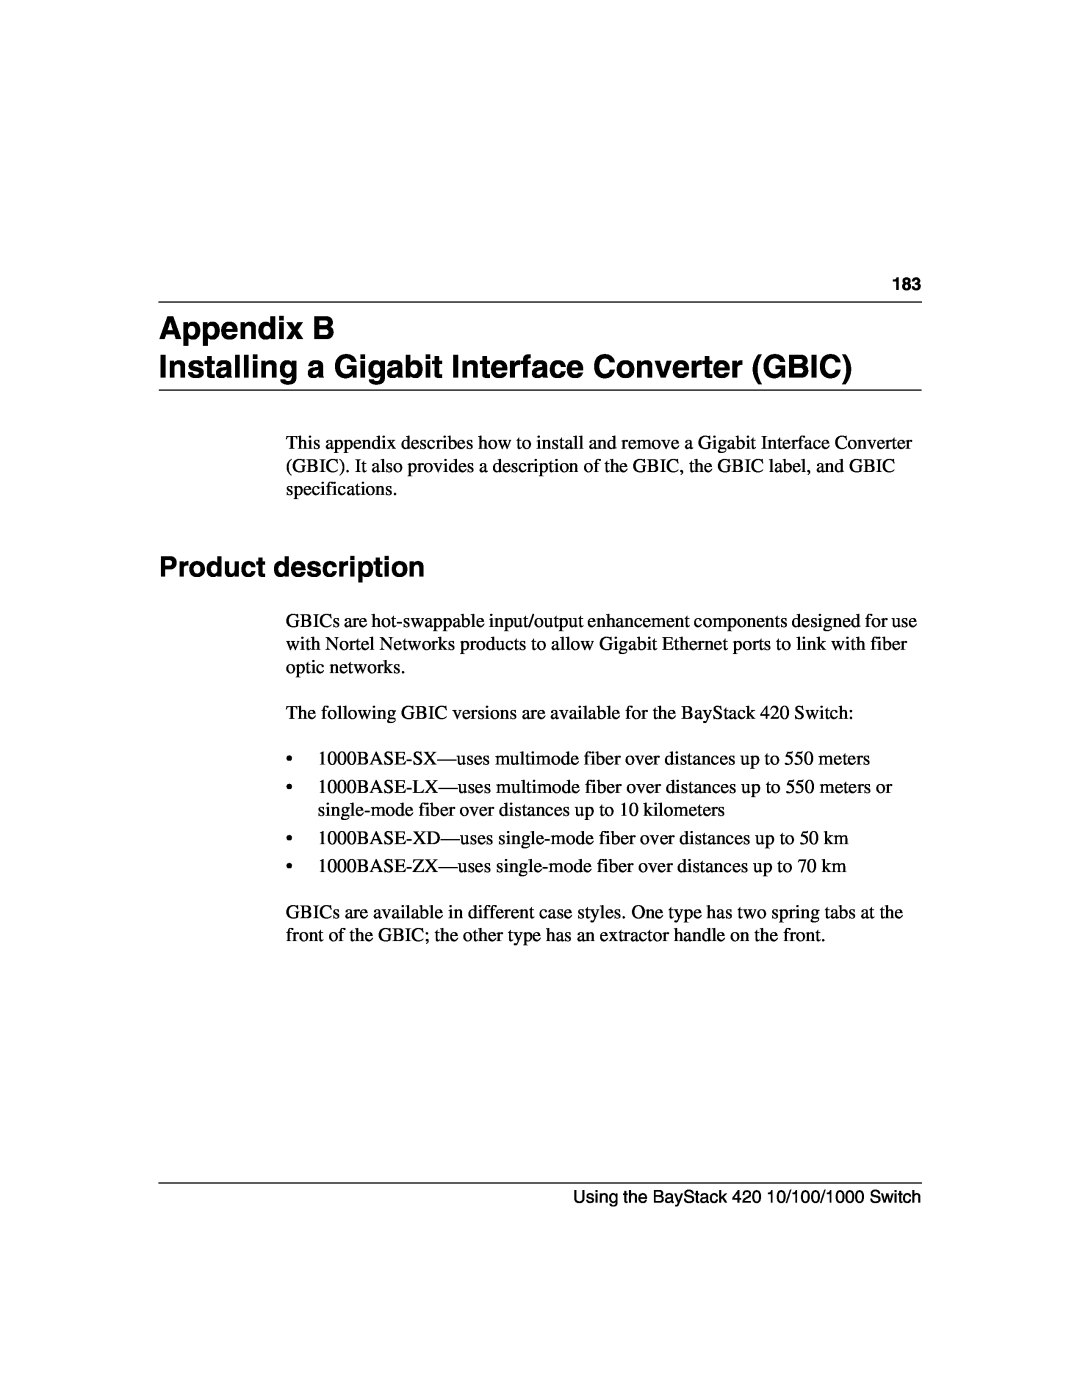 Nortel Networks 1000BASE-ZX, 1000BASE-SX Appendix B Installing a Gigabit Interface Converter GBIC, Product description 